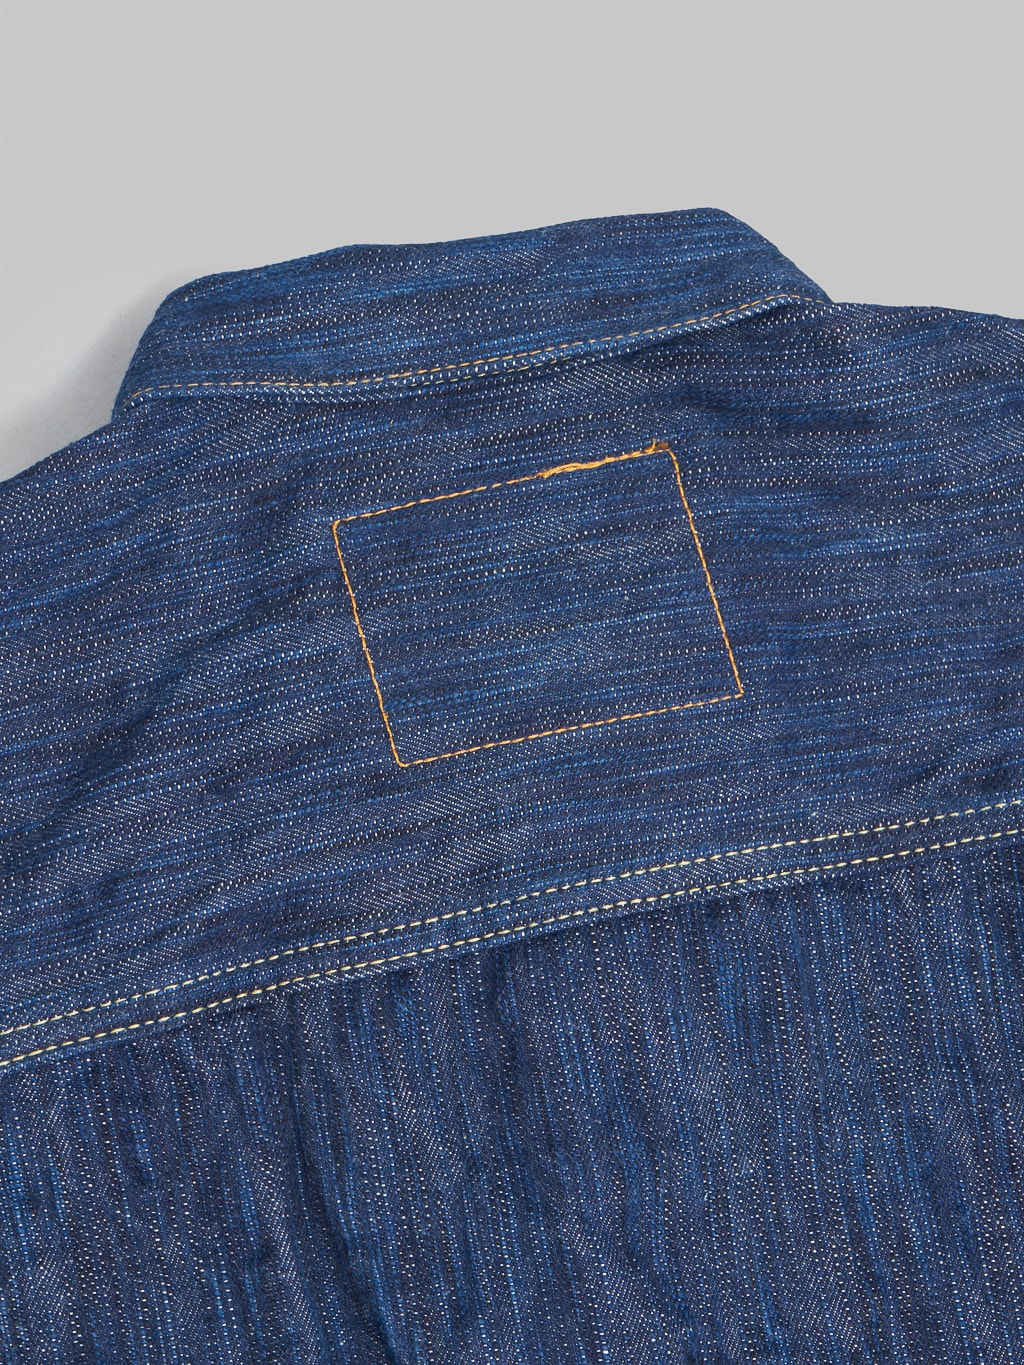 Studio Dartisan Tokushima Awa Shoai Type II indigo jacket chain stitching